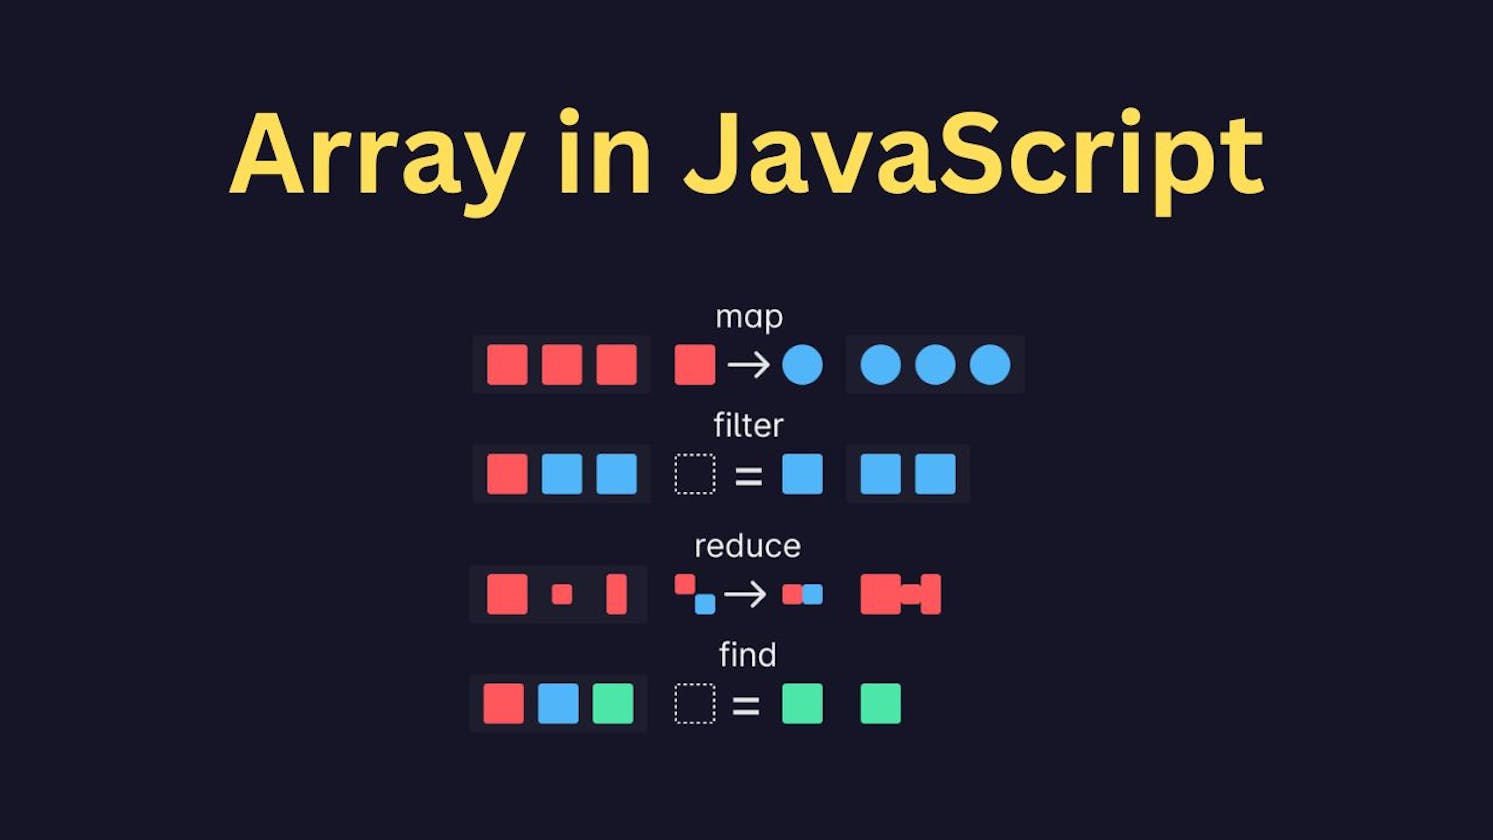 Usage of JavaScript array methods